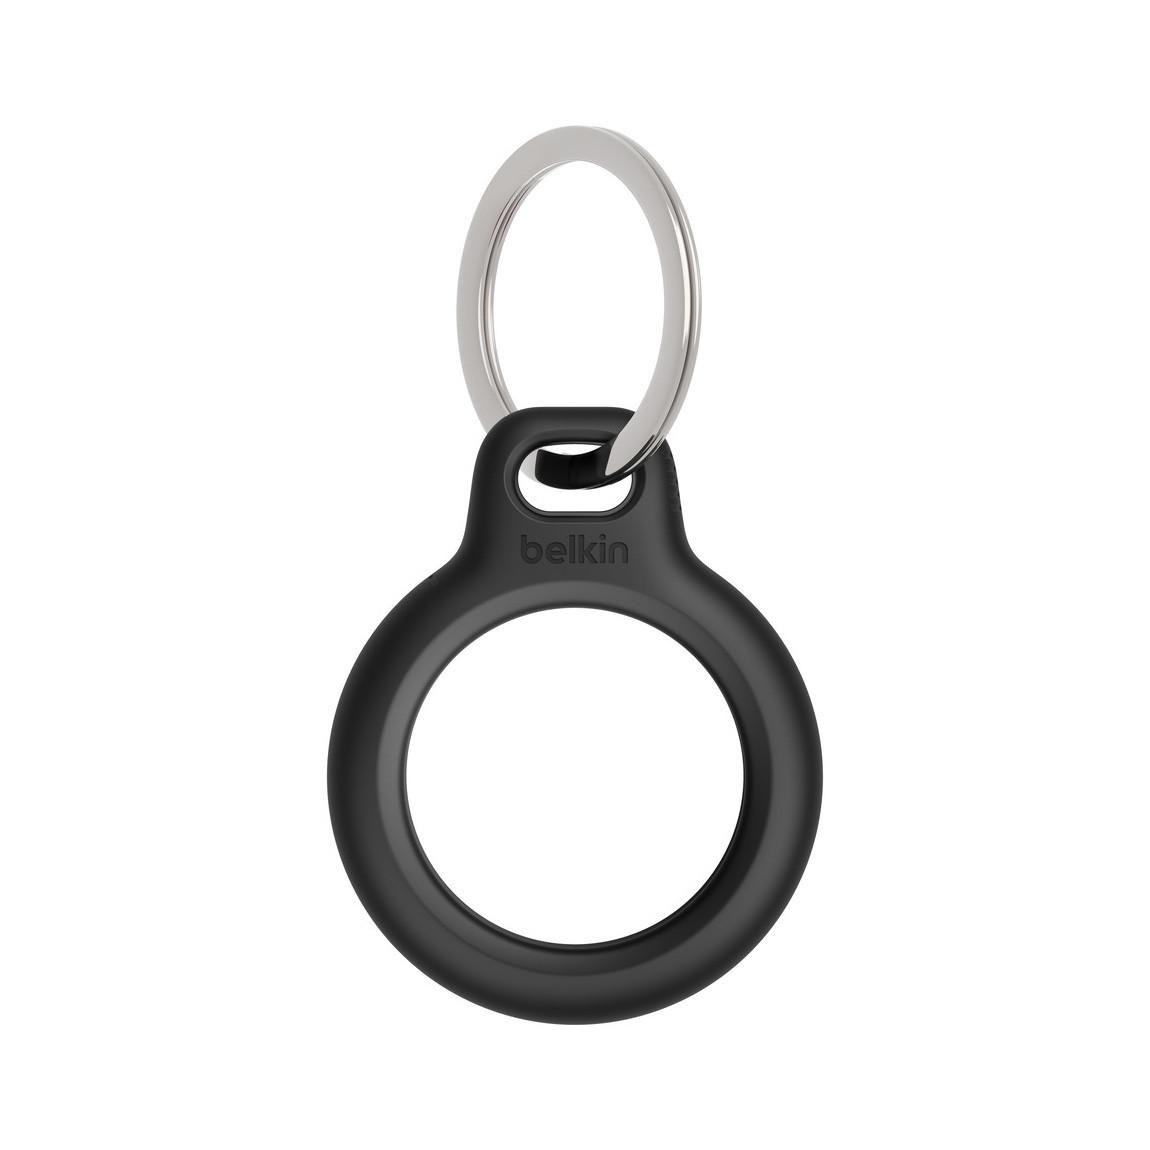 Belkin Secure Holder mit Schlüsselanhänger für Apple AirTag - Frontalansicht ohne AirTag